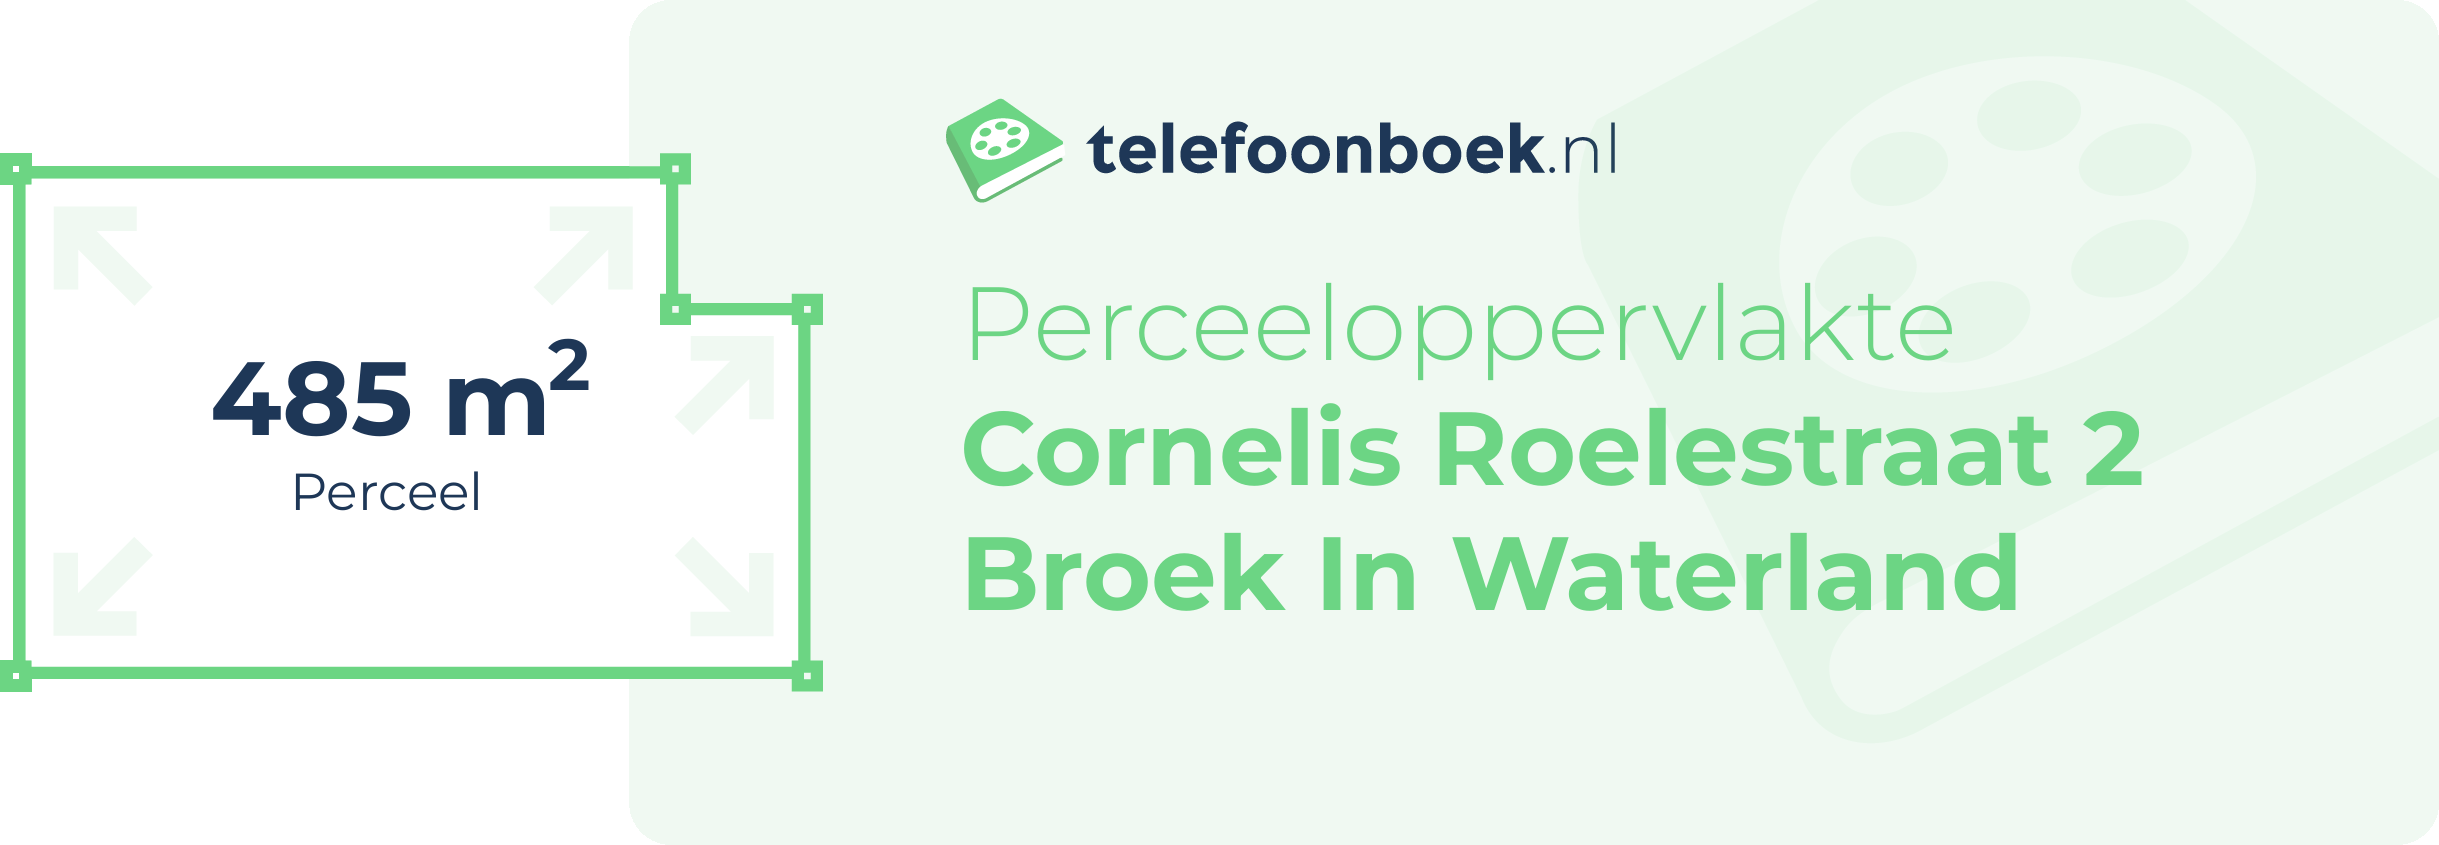 Perceeloppervlakte Cornelis Roelestraat 2 Broek In Waterland